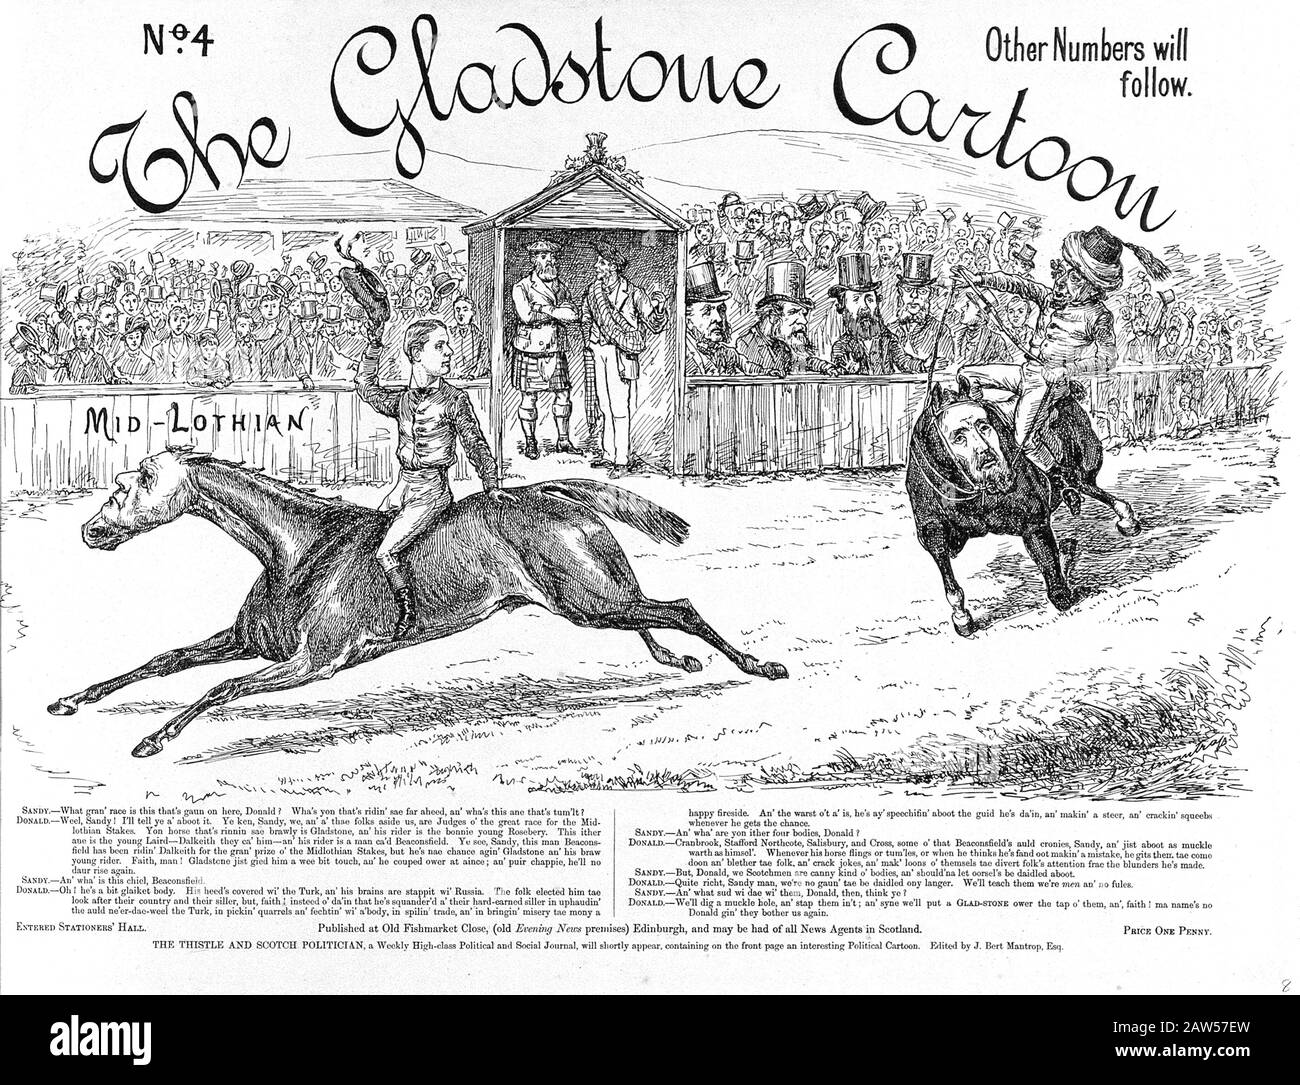 1879, GROSSBRITANNIEN: EINE politische Karikatur, die eine Menschenmenge zeigt, die eine Horserei zwischen Lord Rosebery und Benjamin Disraelis als Vertreter der Midlothia beobachtet Stockfoto